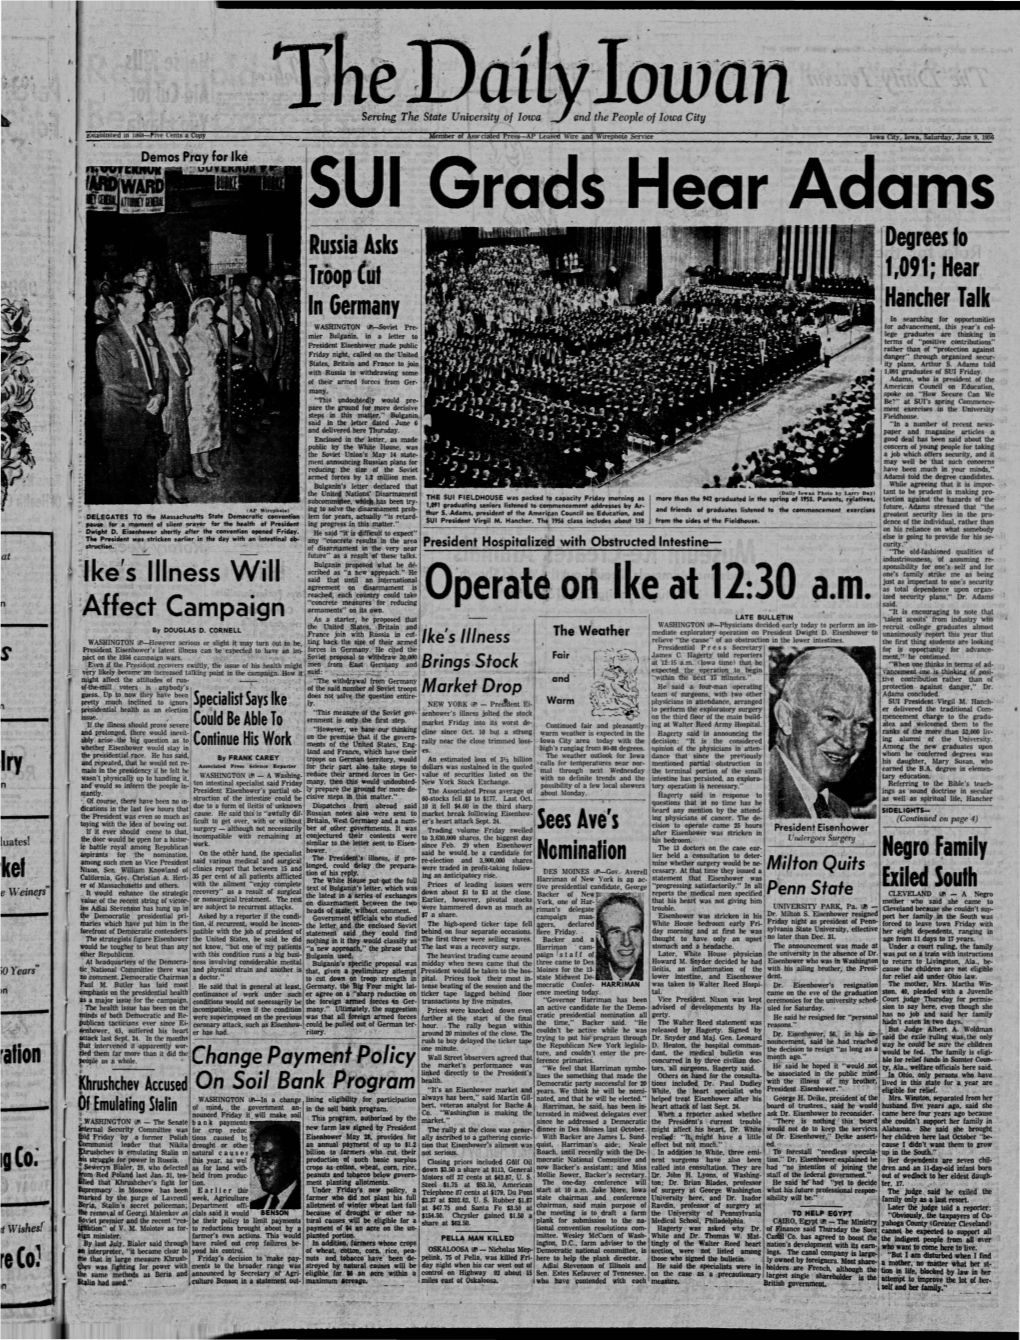 Daily Iowan (Iowa City, Iowa), 1956-06-09